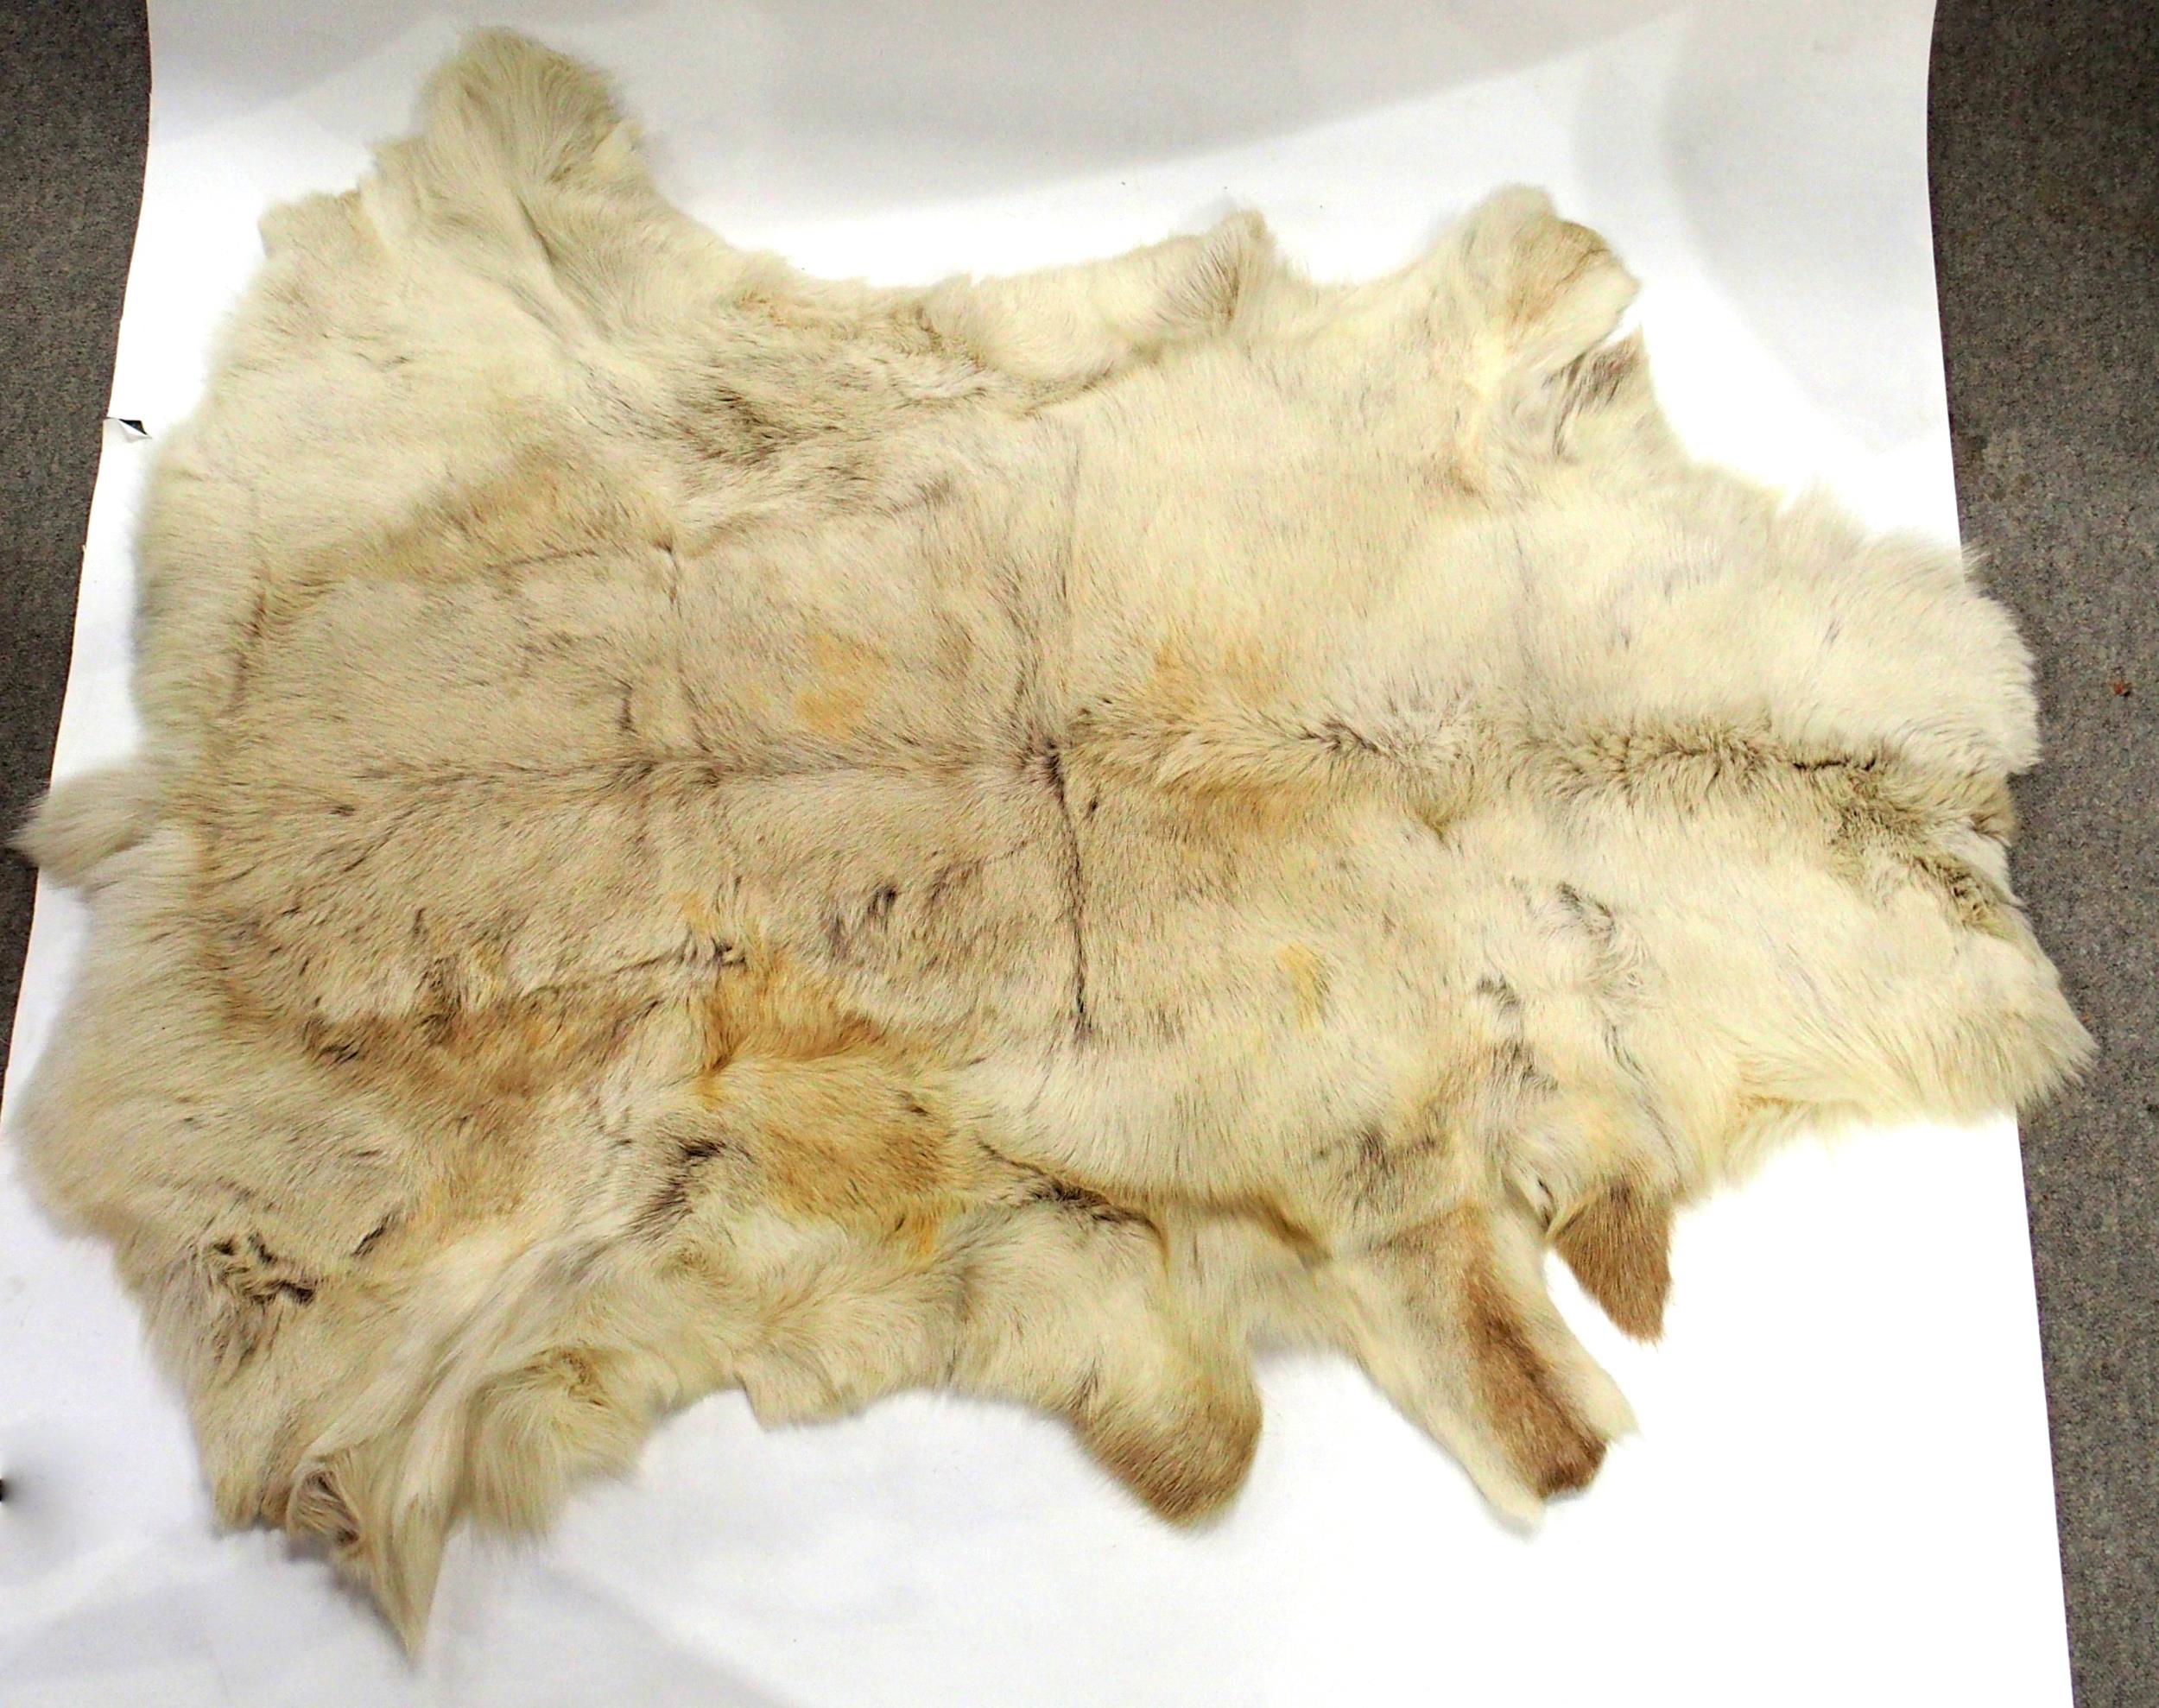 A fox fur coat, other fur jackets, a Karter velvet and fur muff bag, an animal skin floor rug etc - Image 2 of 2